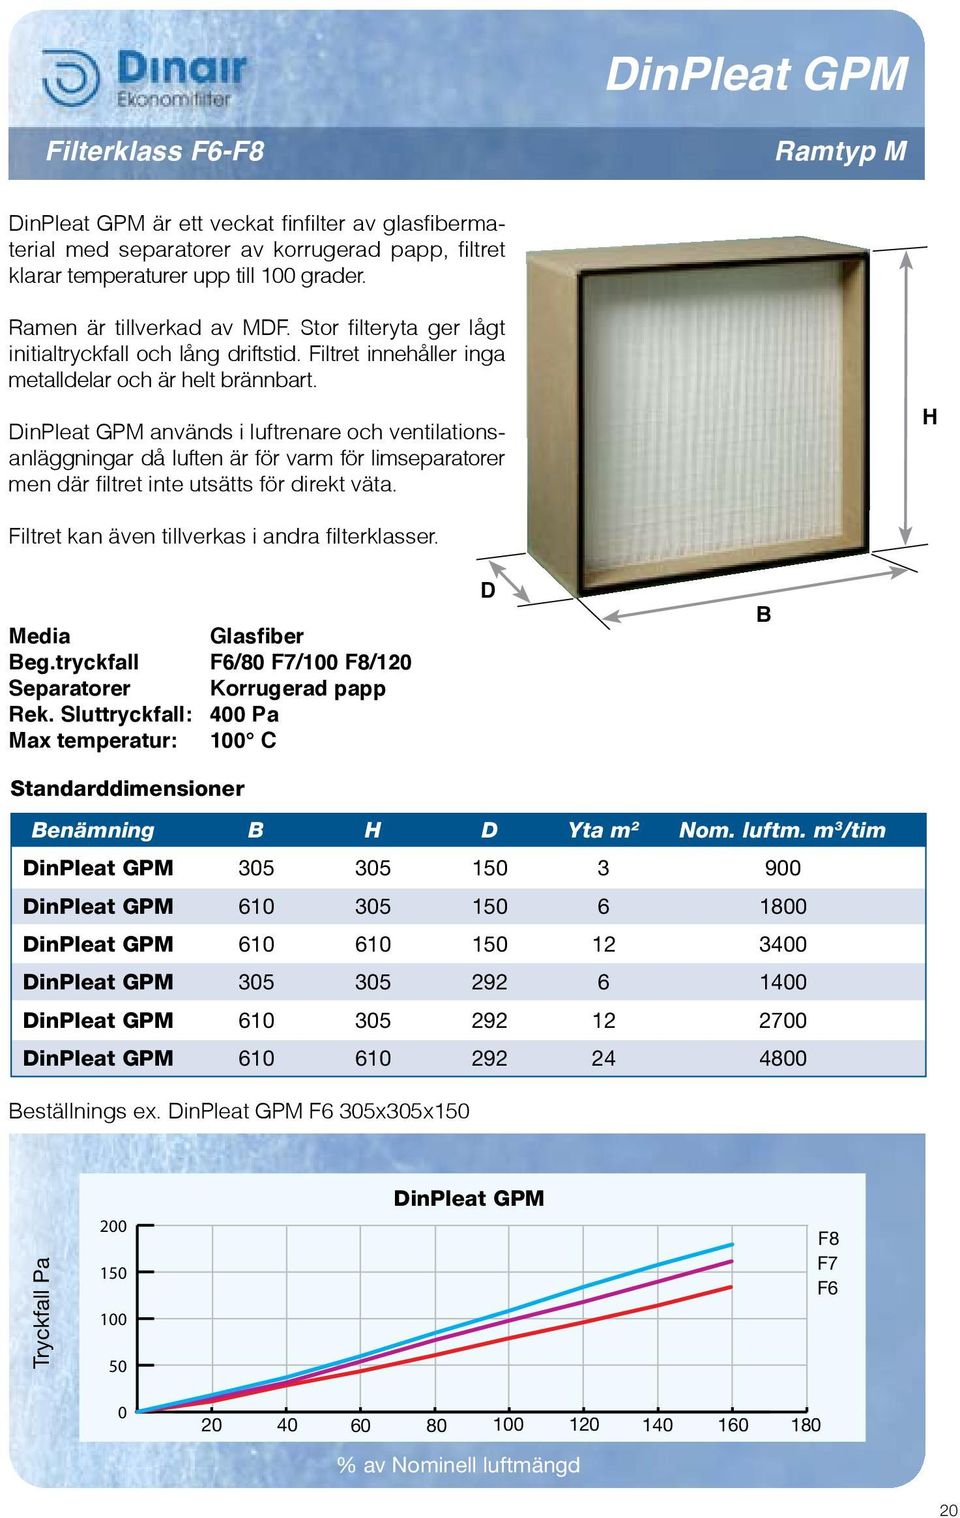 inpleat GPM används i luftrenare och ventilationsanläggningar då luften är för varm för limseparatorer men där filtret inte utsätts för direkt väta. Filtret kan även tillverkas i andra filterklasser.